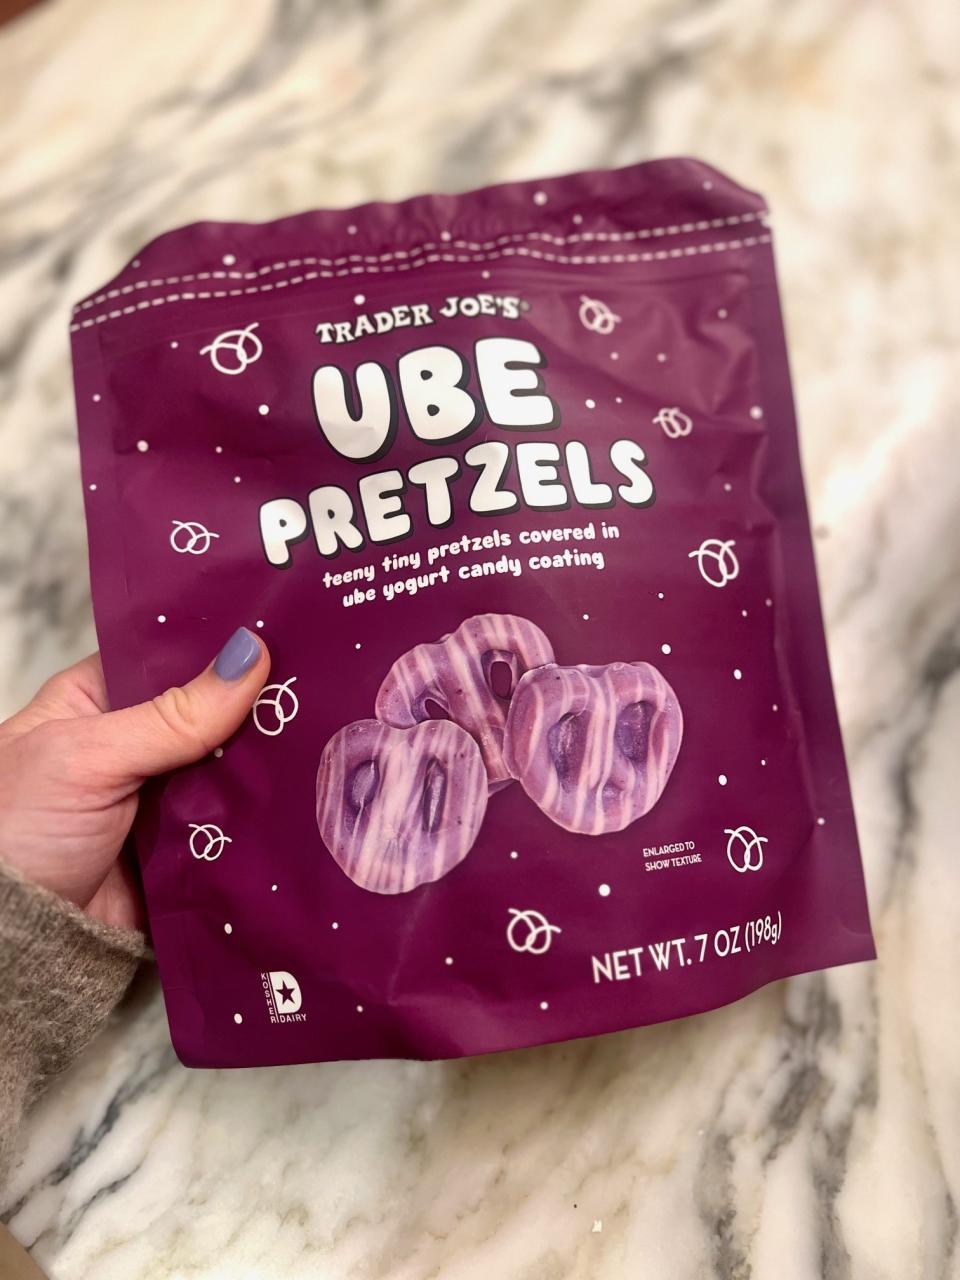 A bag of ube pretzels.